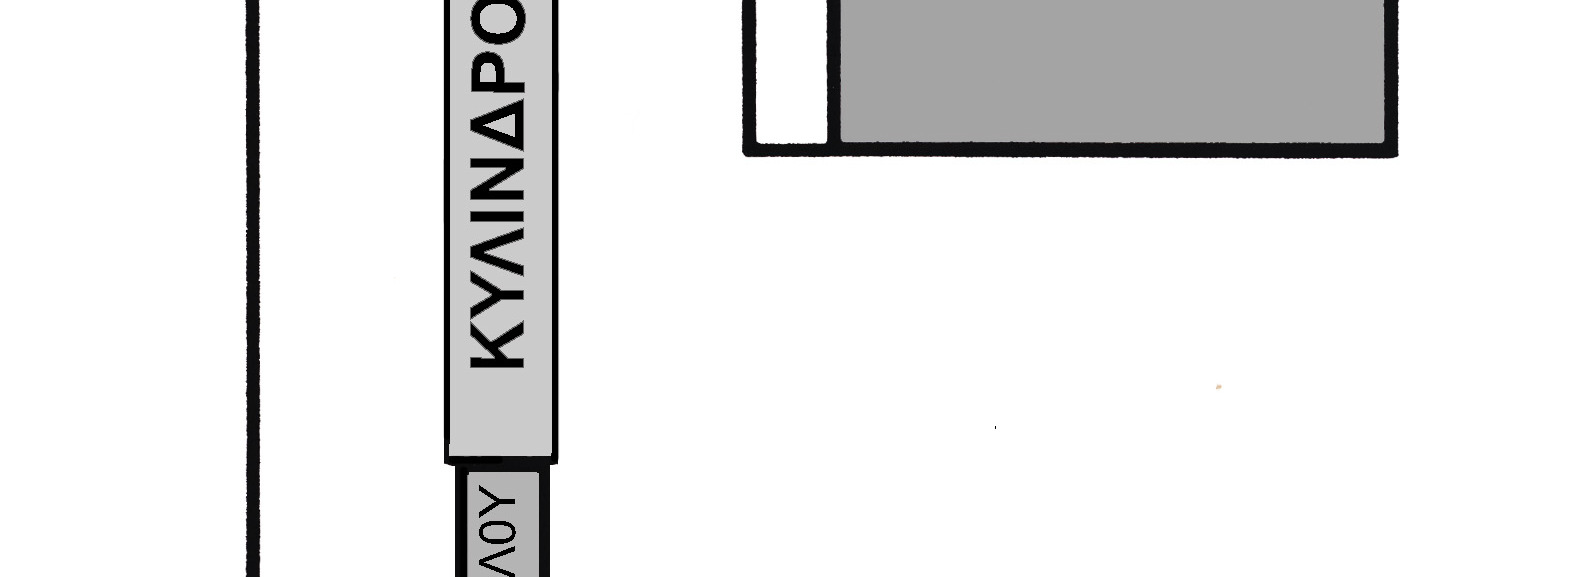 73) Στο παρακάτω σχήμα απεικονίζεται η ανάρτηση ενός υδραυλικού ανελκυστήρα.